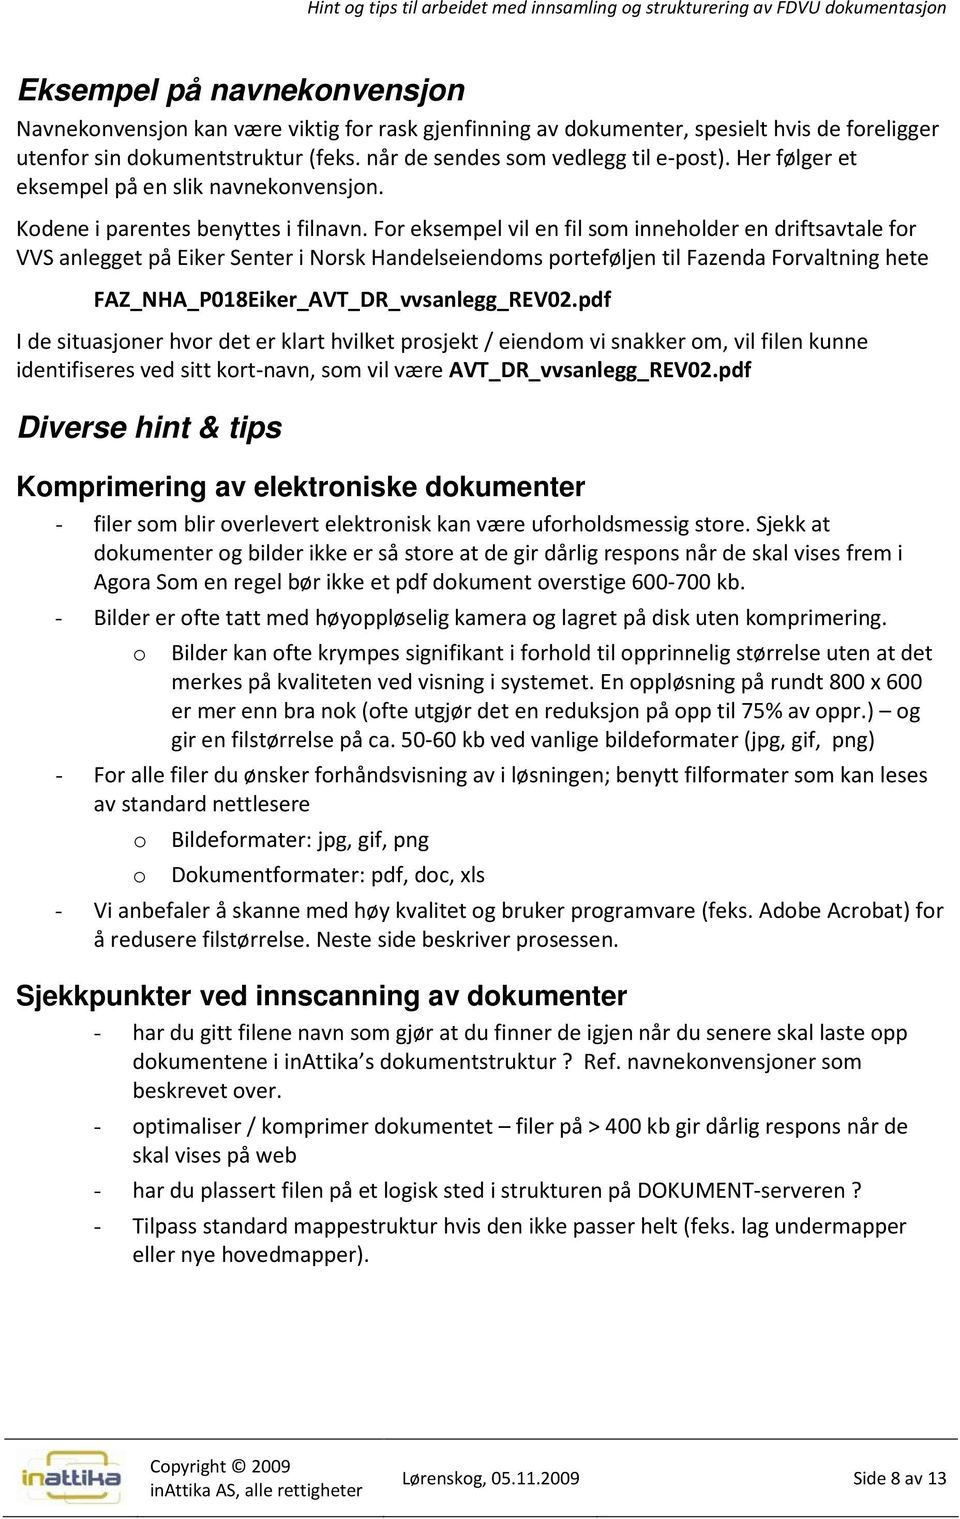 For eksempel vil en fil som inneholder en driftsavtale for VVS anlegget på Eiker Senter i Norsk Handelseiendoms porteføljen til Fazenda Forvaltning hete FAZ_NHA_P018Eiker_AVT_DR_vvsanlegg_REV02.